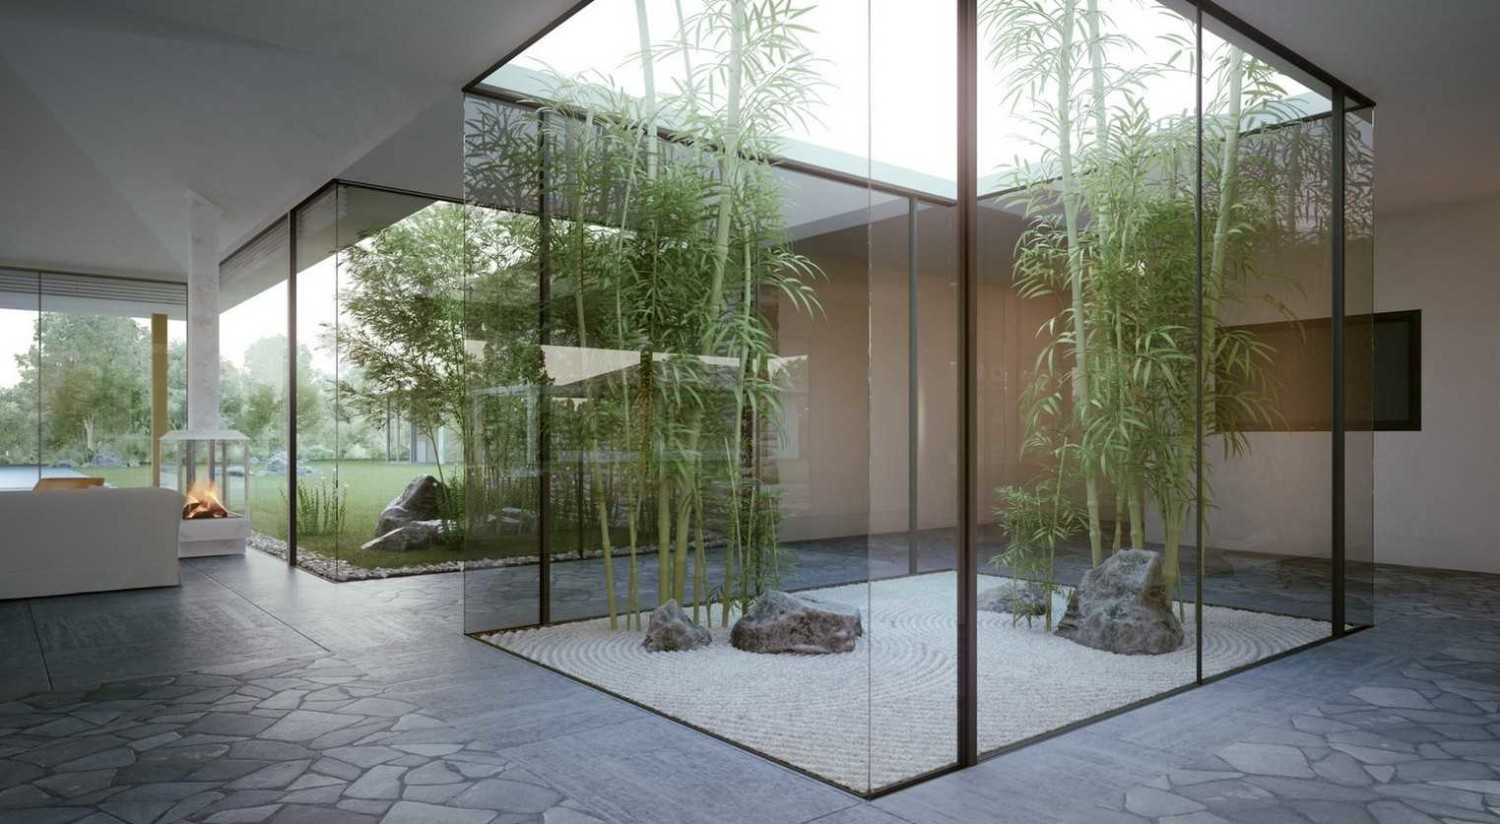 8 Desain Taman ala Zen Garden Jepang untuk Rumah Minimalis 